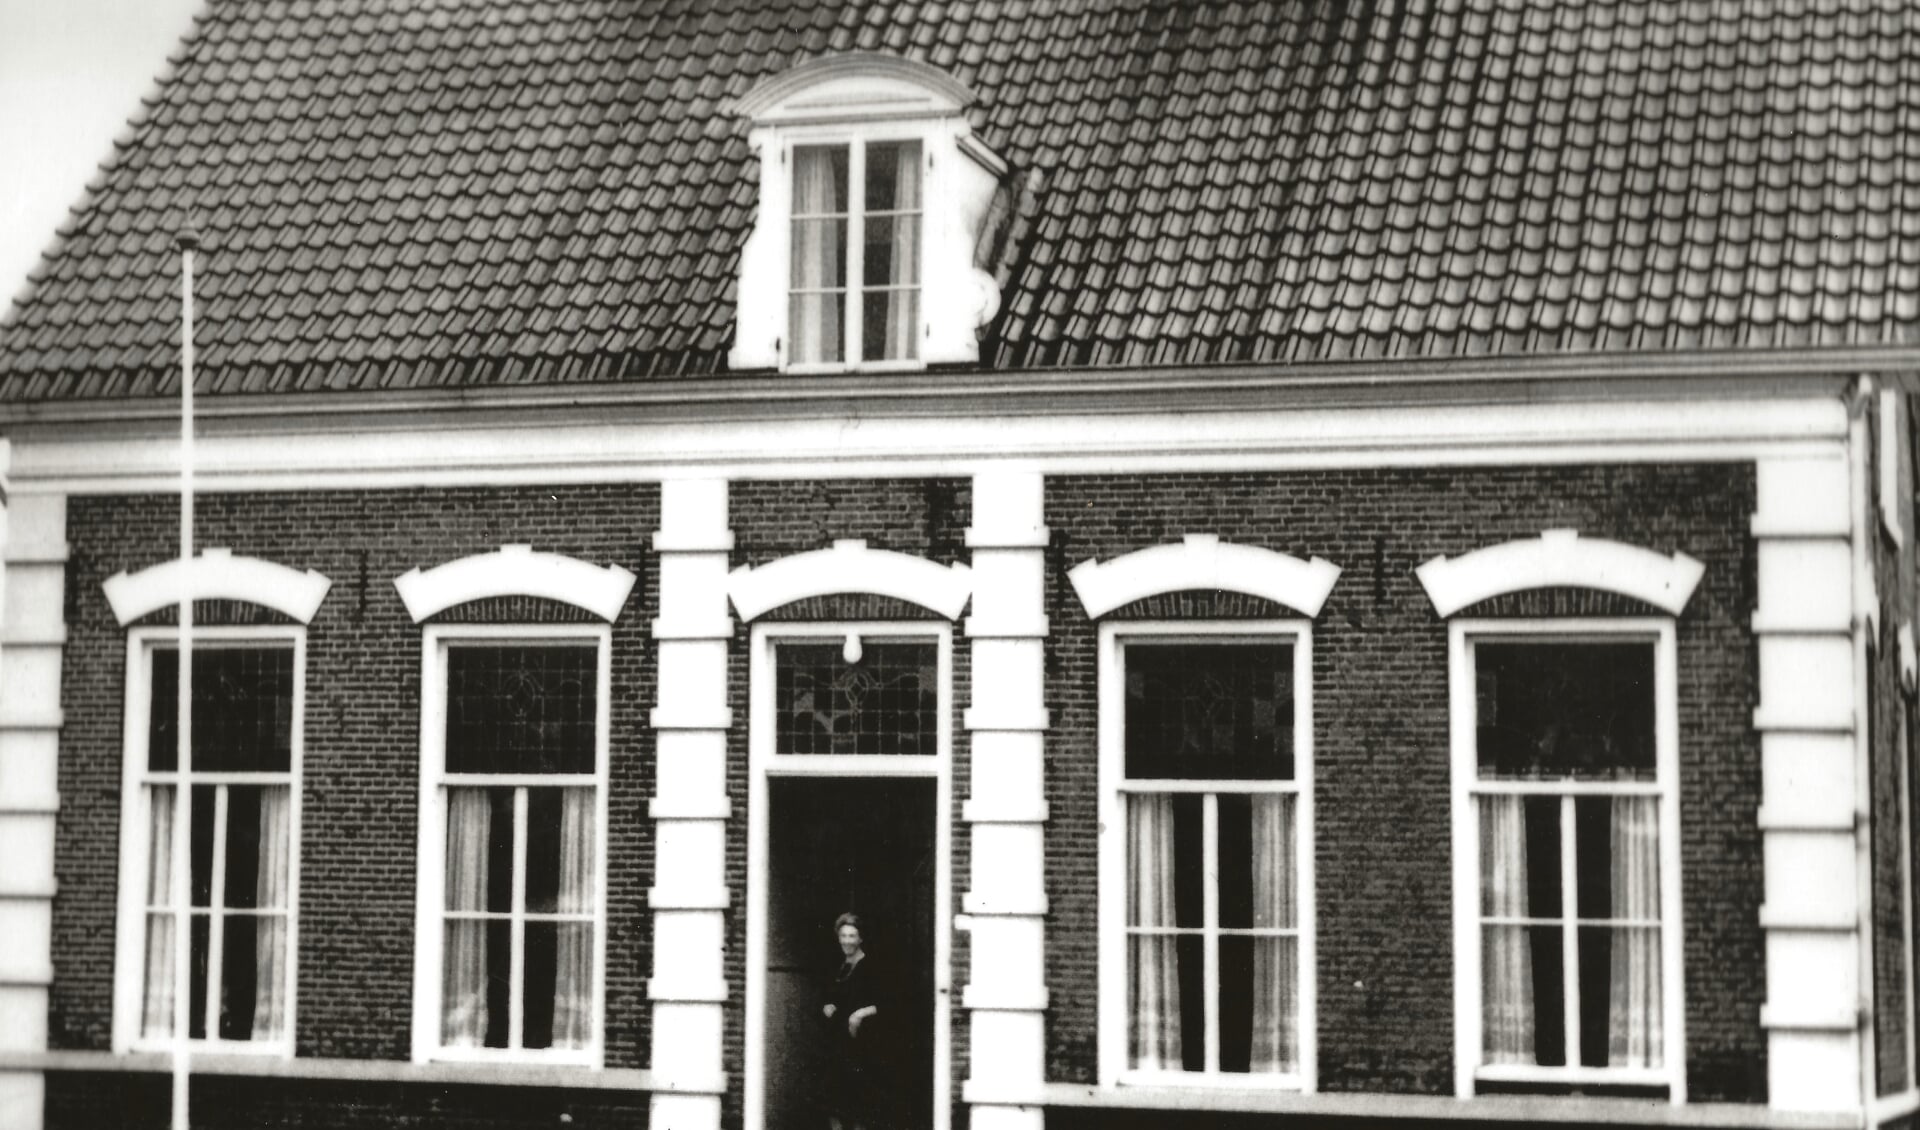 De barones voor haar (inmiddels al lang verdwenen) woning. Op hetzelfde erf zou in 1880 op haar initiatief de Schimmelpenninck van der Oyeschool worden gebouwd.